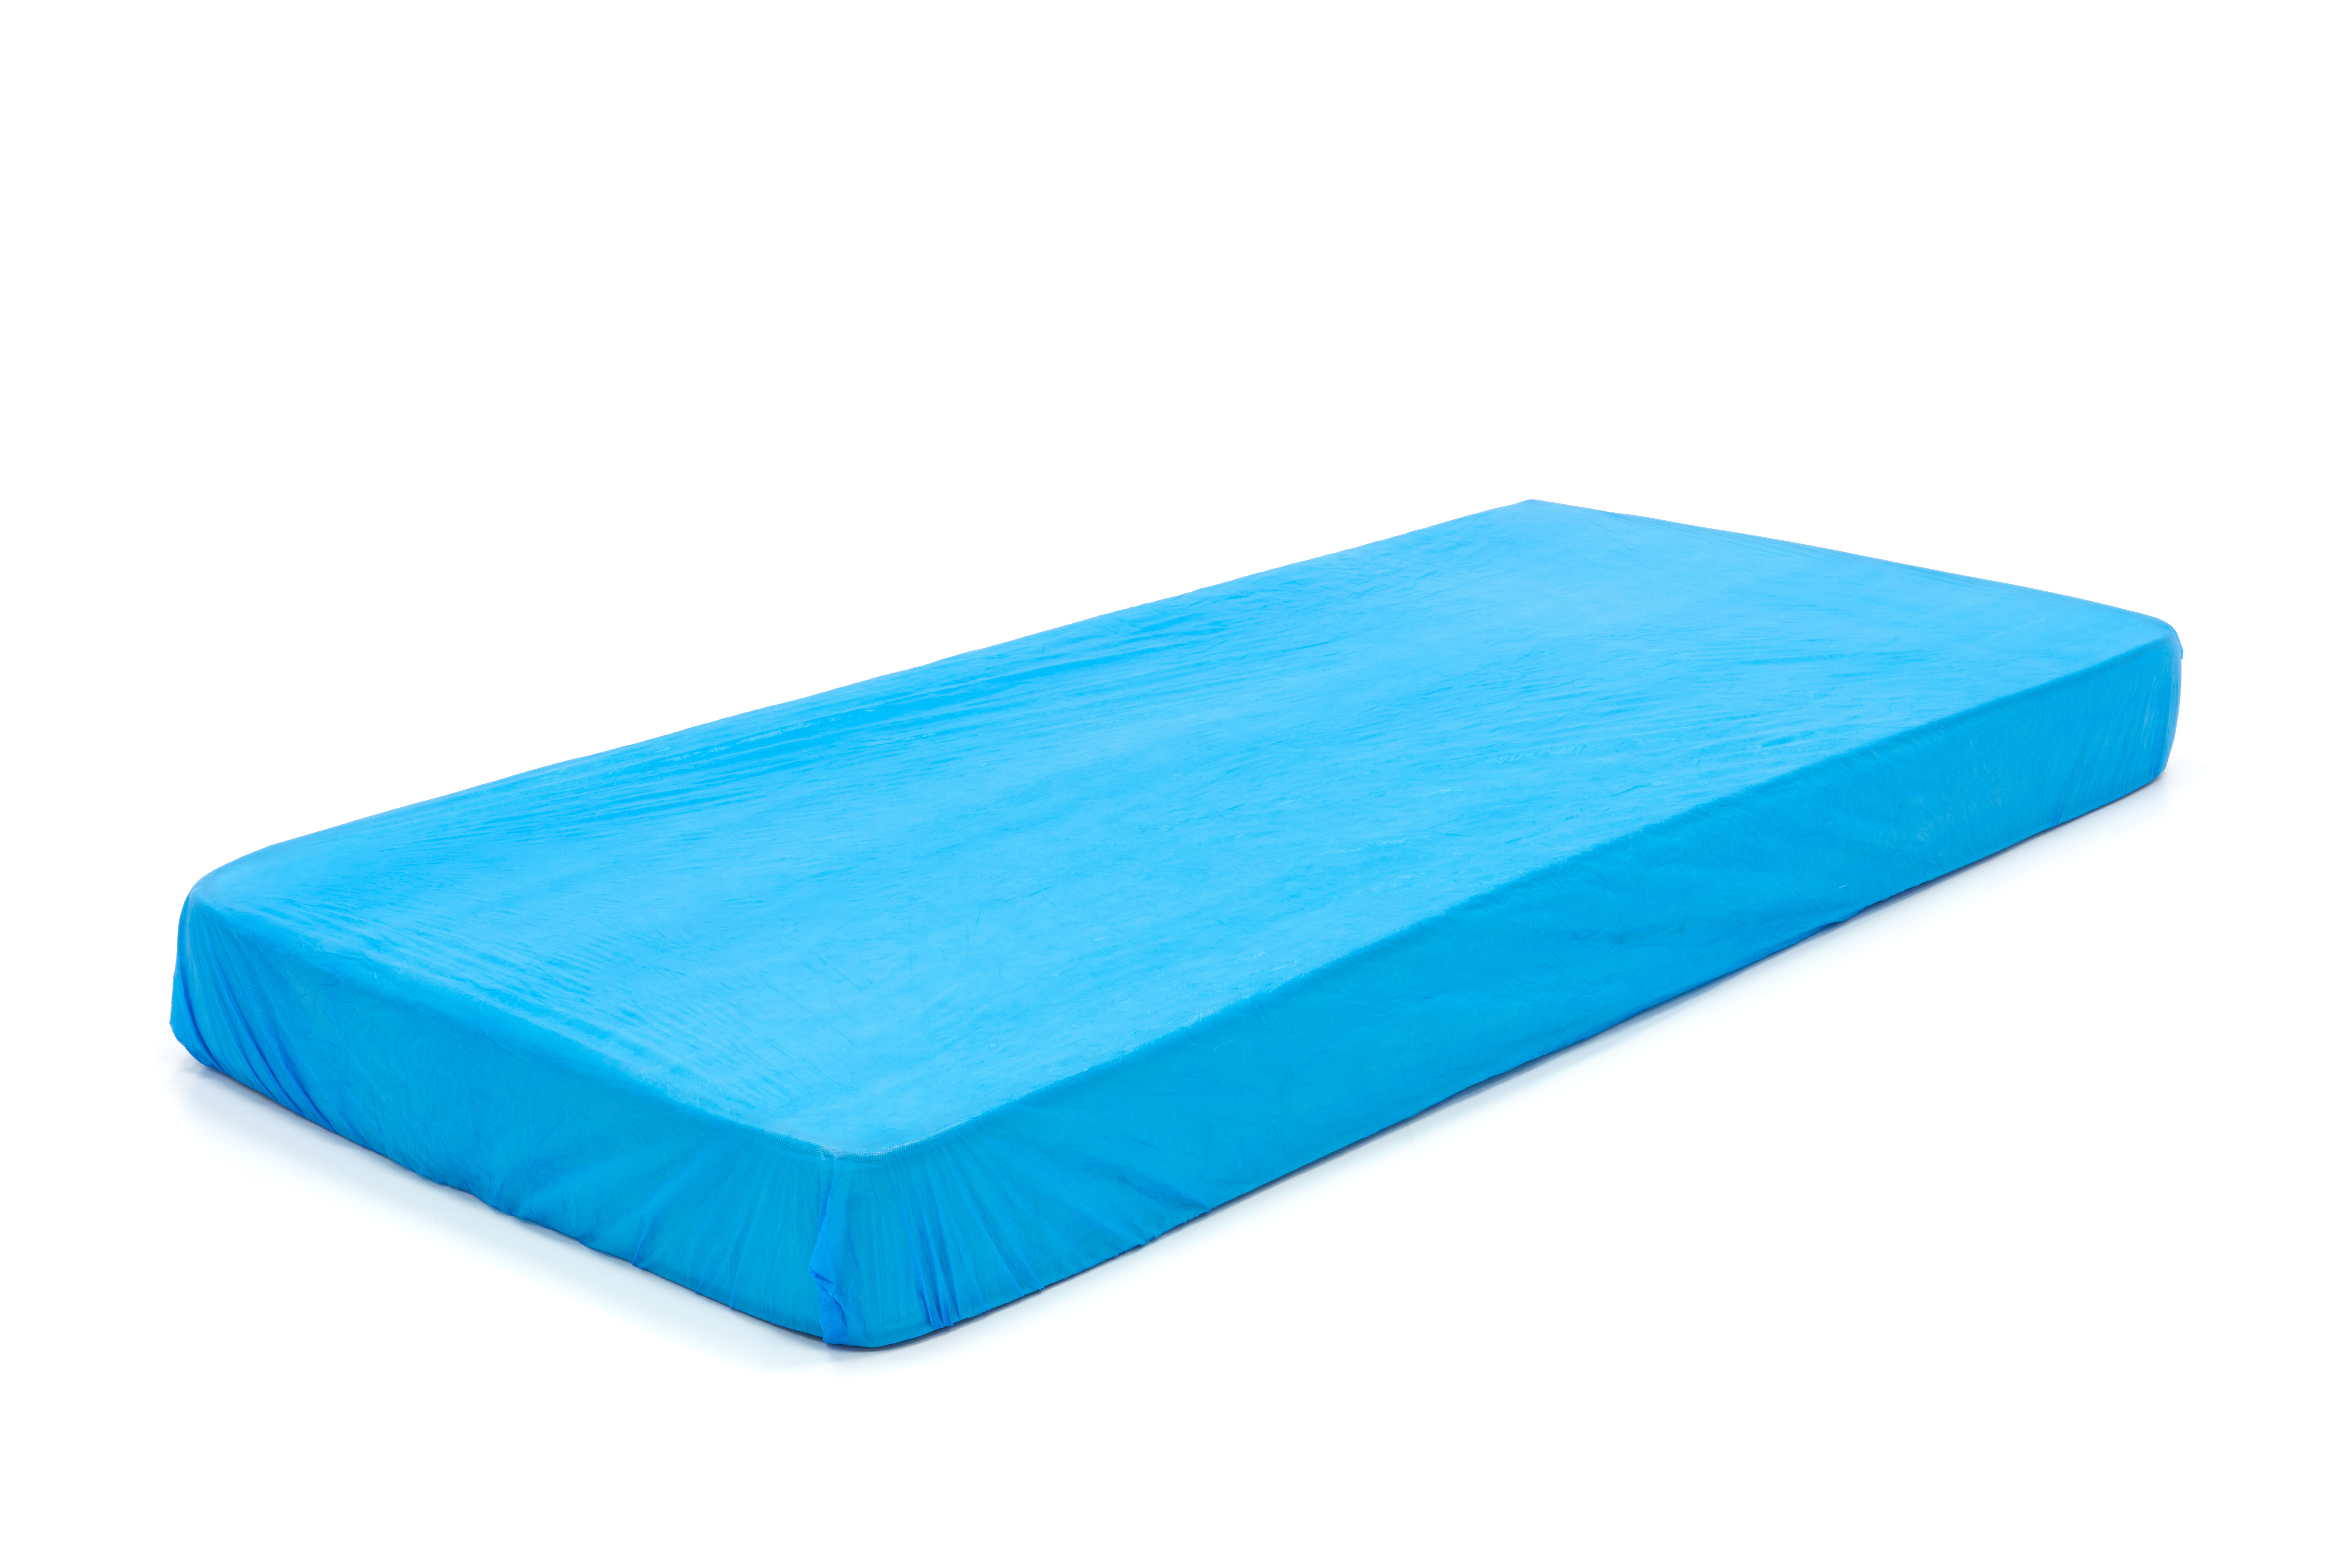 MC-100 Fundas de colchón Romed CPE, azul, Tamaño: 210x90x20cm, en relieve, por 10 piezas en un paquete, 10 x 10 piezas = 100 piezas en una caja.